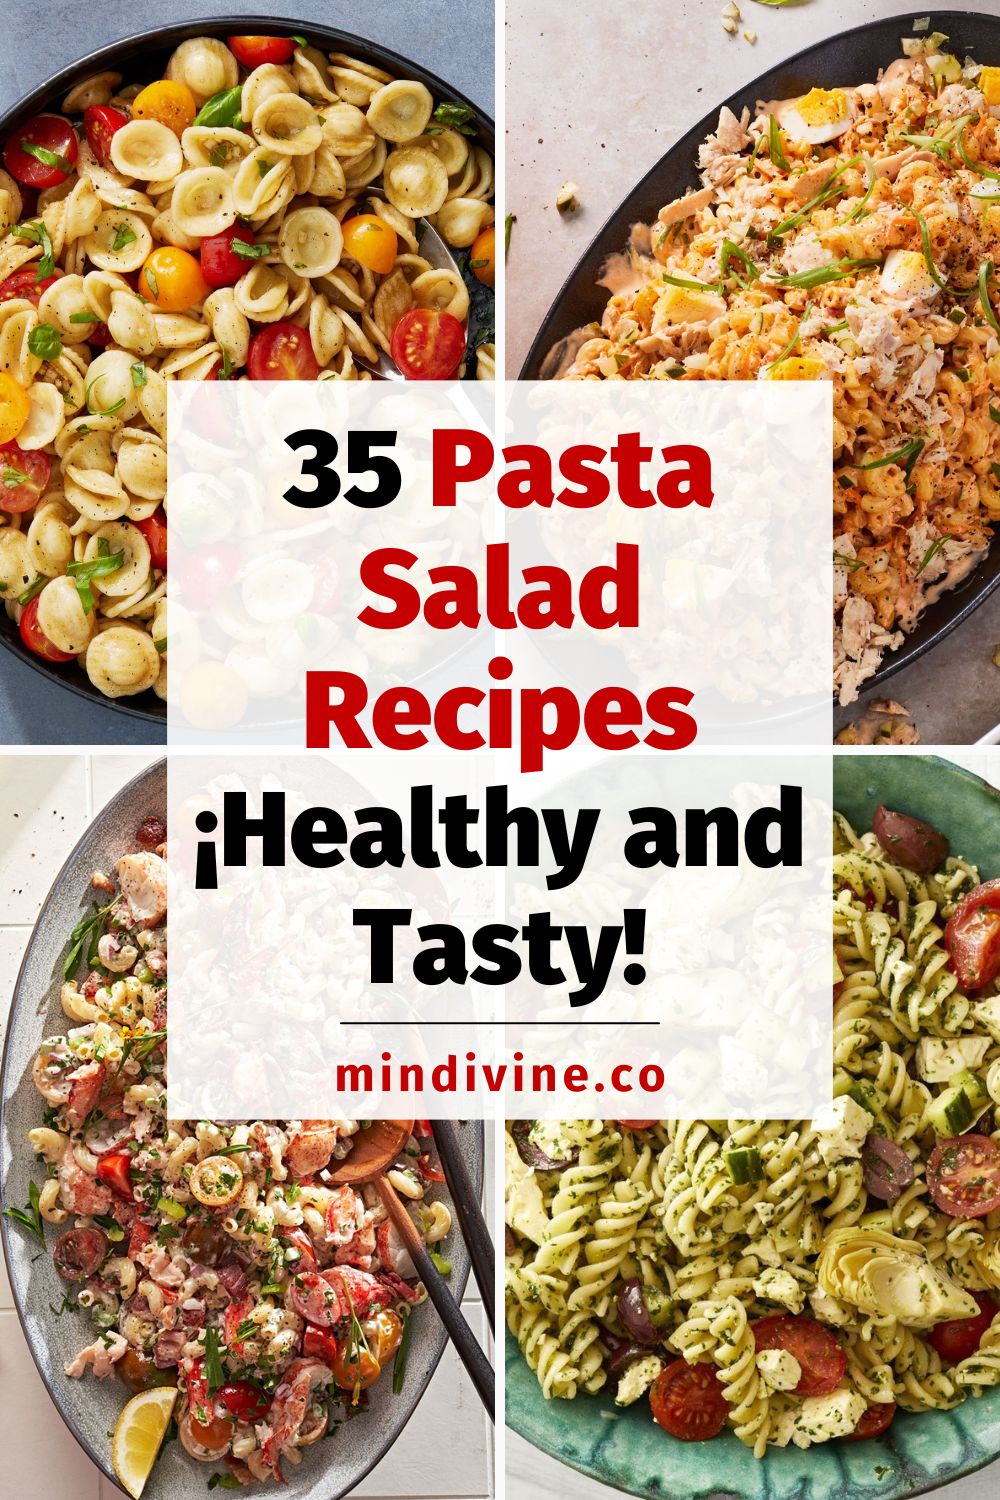 4 healthy and delicious pasta salad recipes